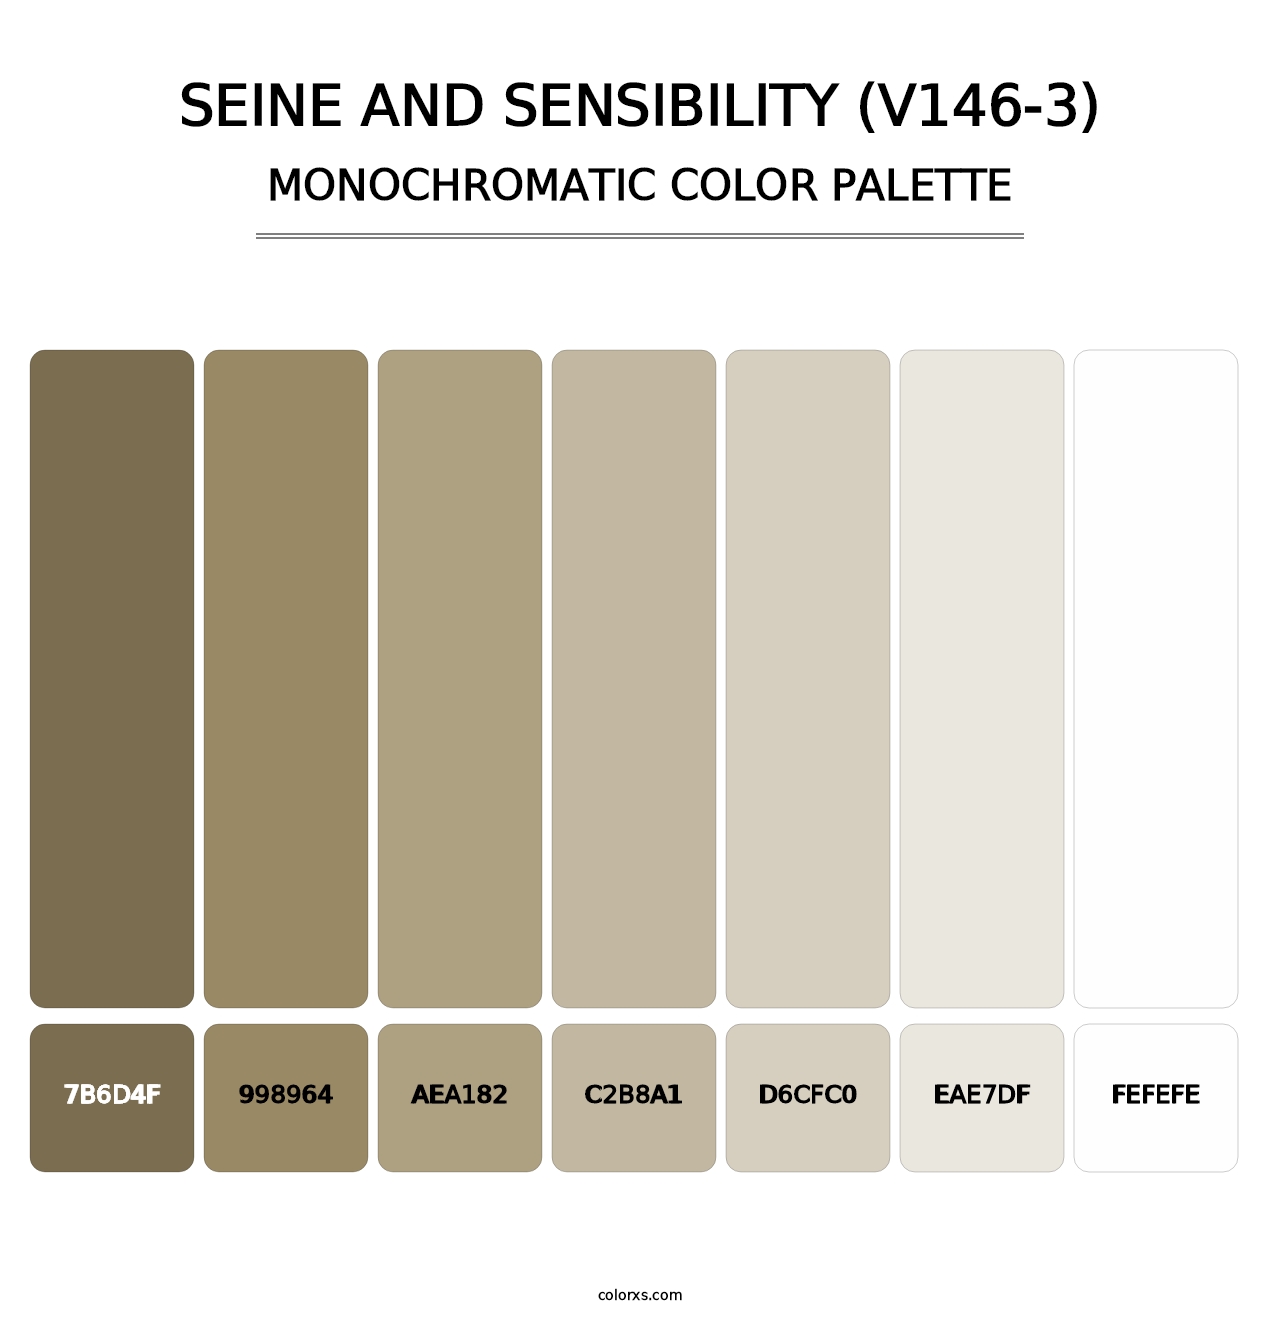 Seine and Sensibility (V146-3) - Monochromatic Color Palette